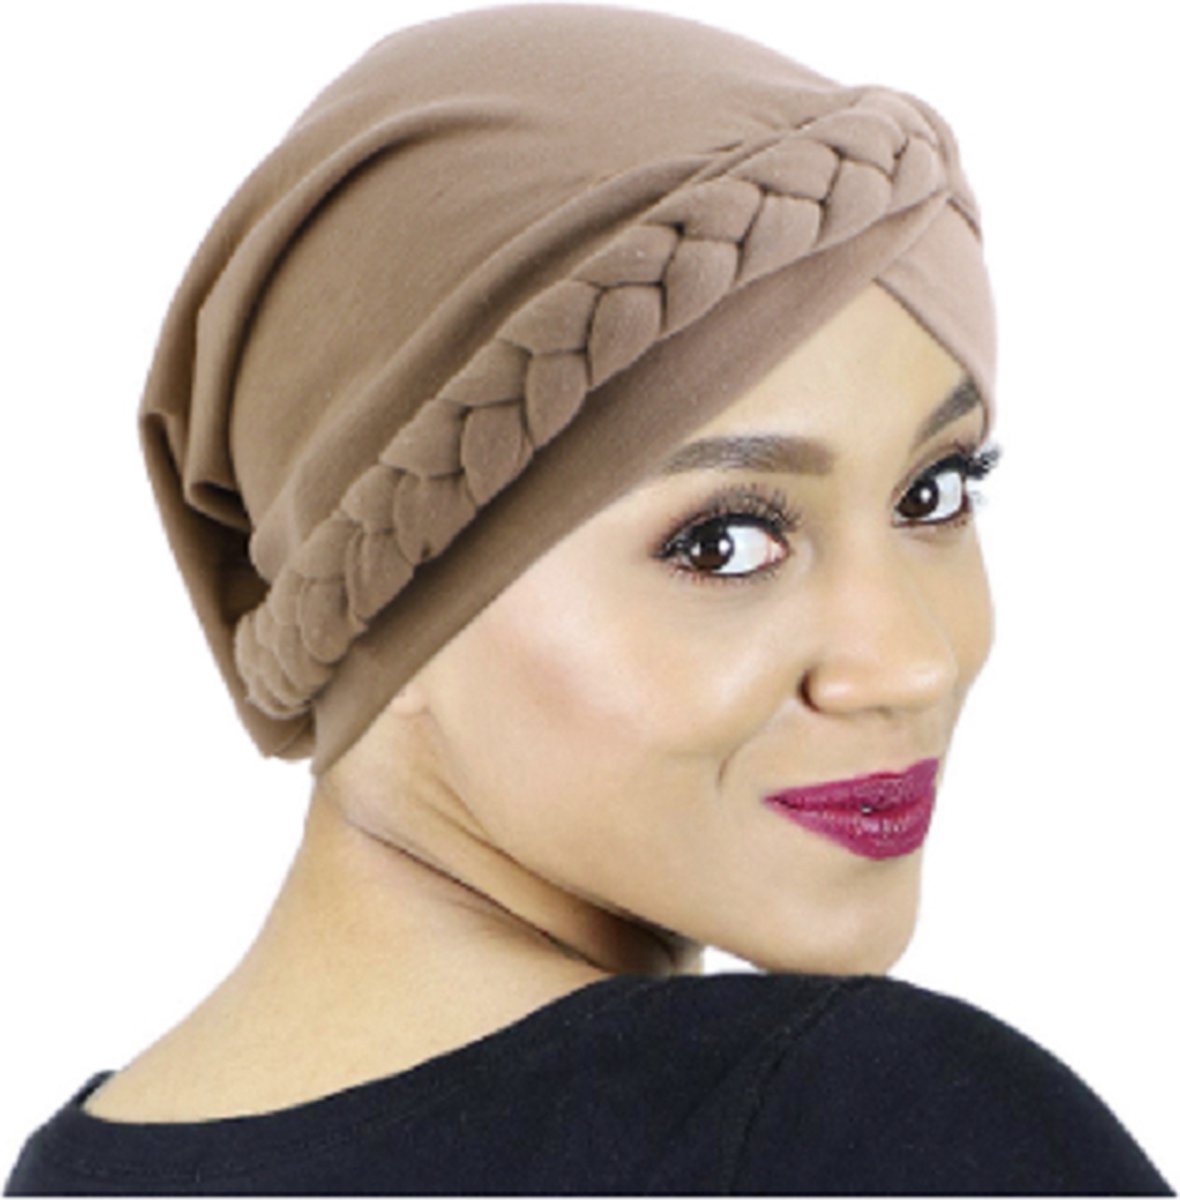 Turban Hat Fashion élégant chapeau de chimio foulard respirant pour les  femmes 